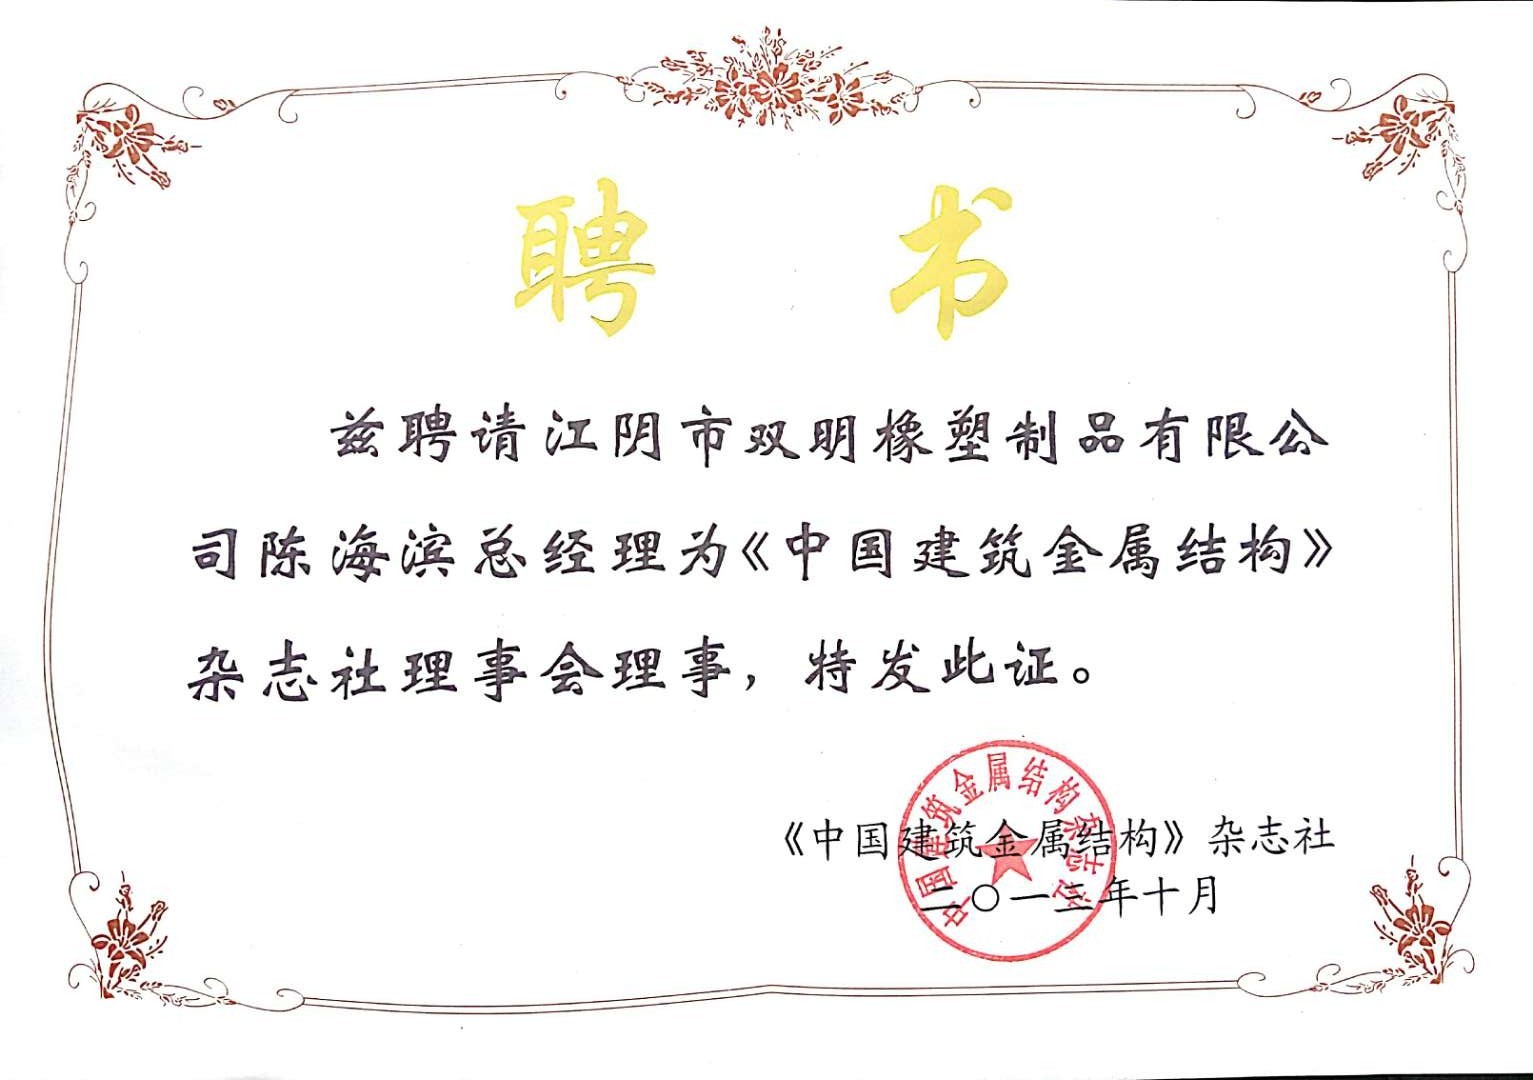 【双明】公司总经理陈海滨先生当选为《中国建筑金属结构》杂志社理事会理事